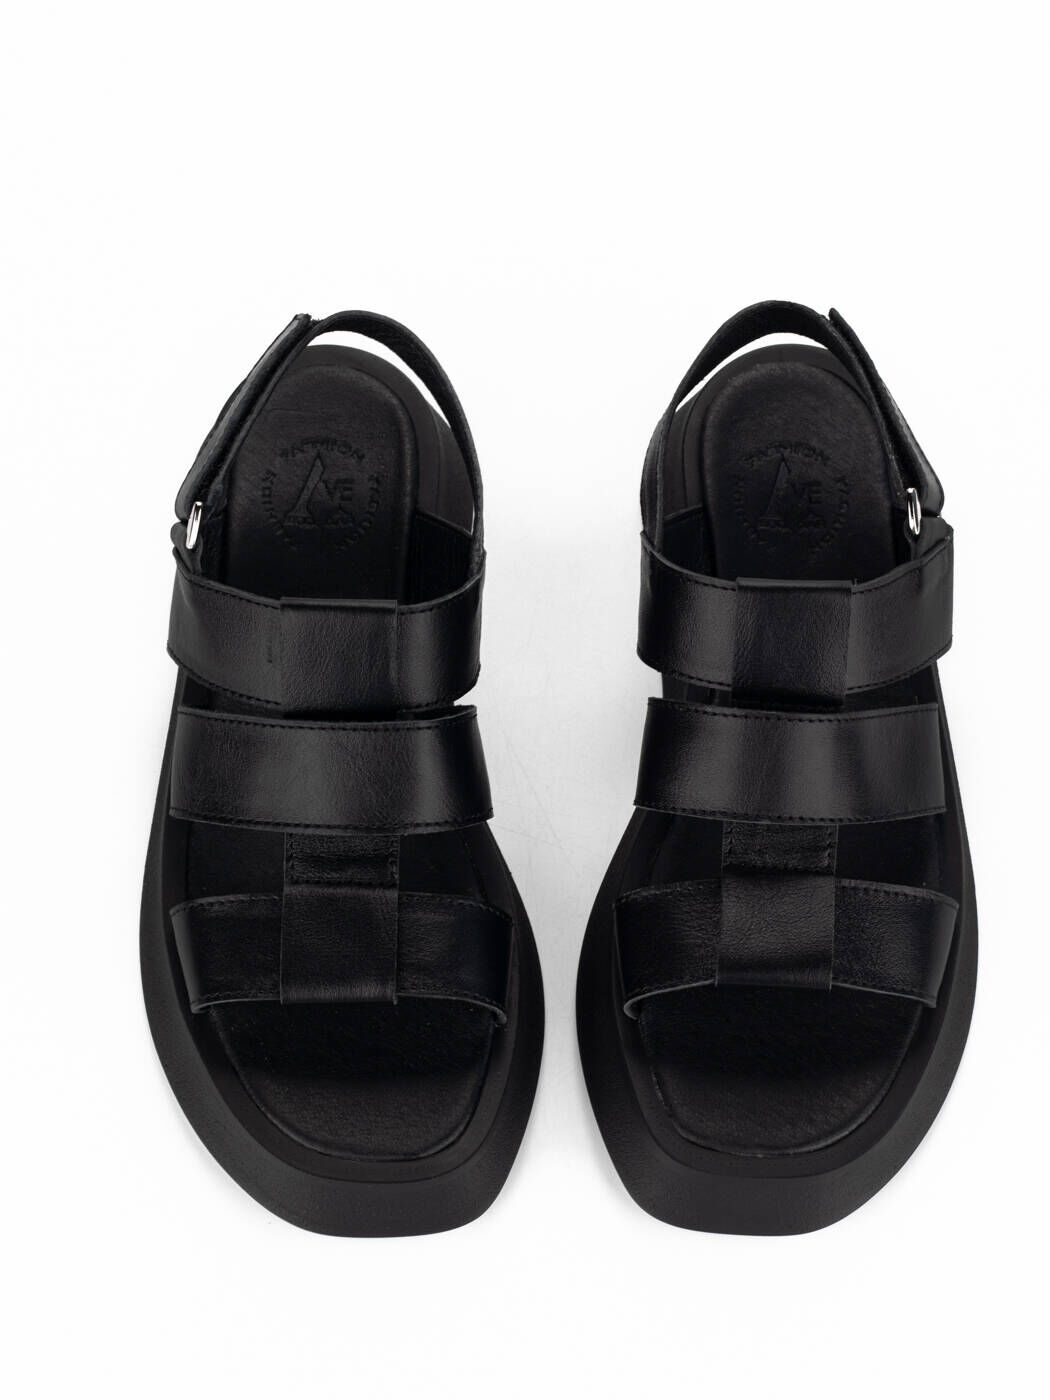 Жіночі босоніжки шкіряні літні чорні Leader Style 2992, Розмір: 36, 37, 38  (ID#1634259313), цена: 1440 ₴, купить на